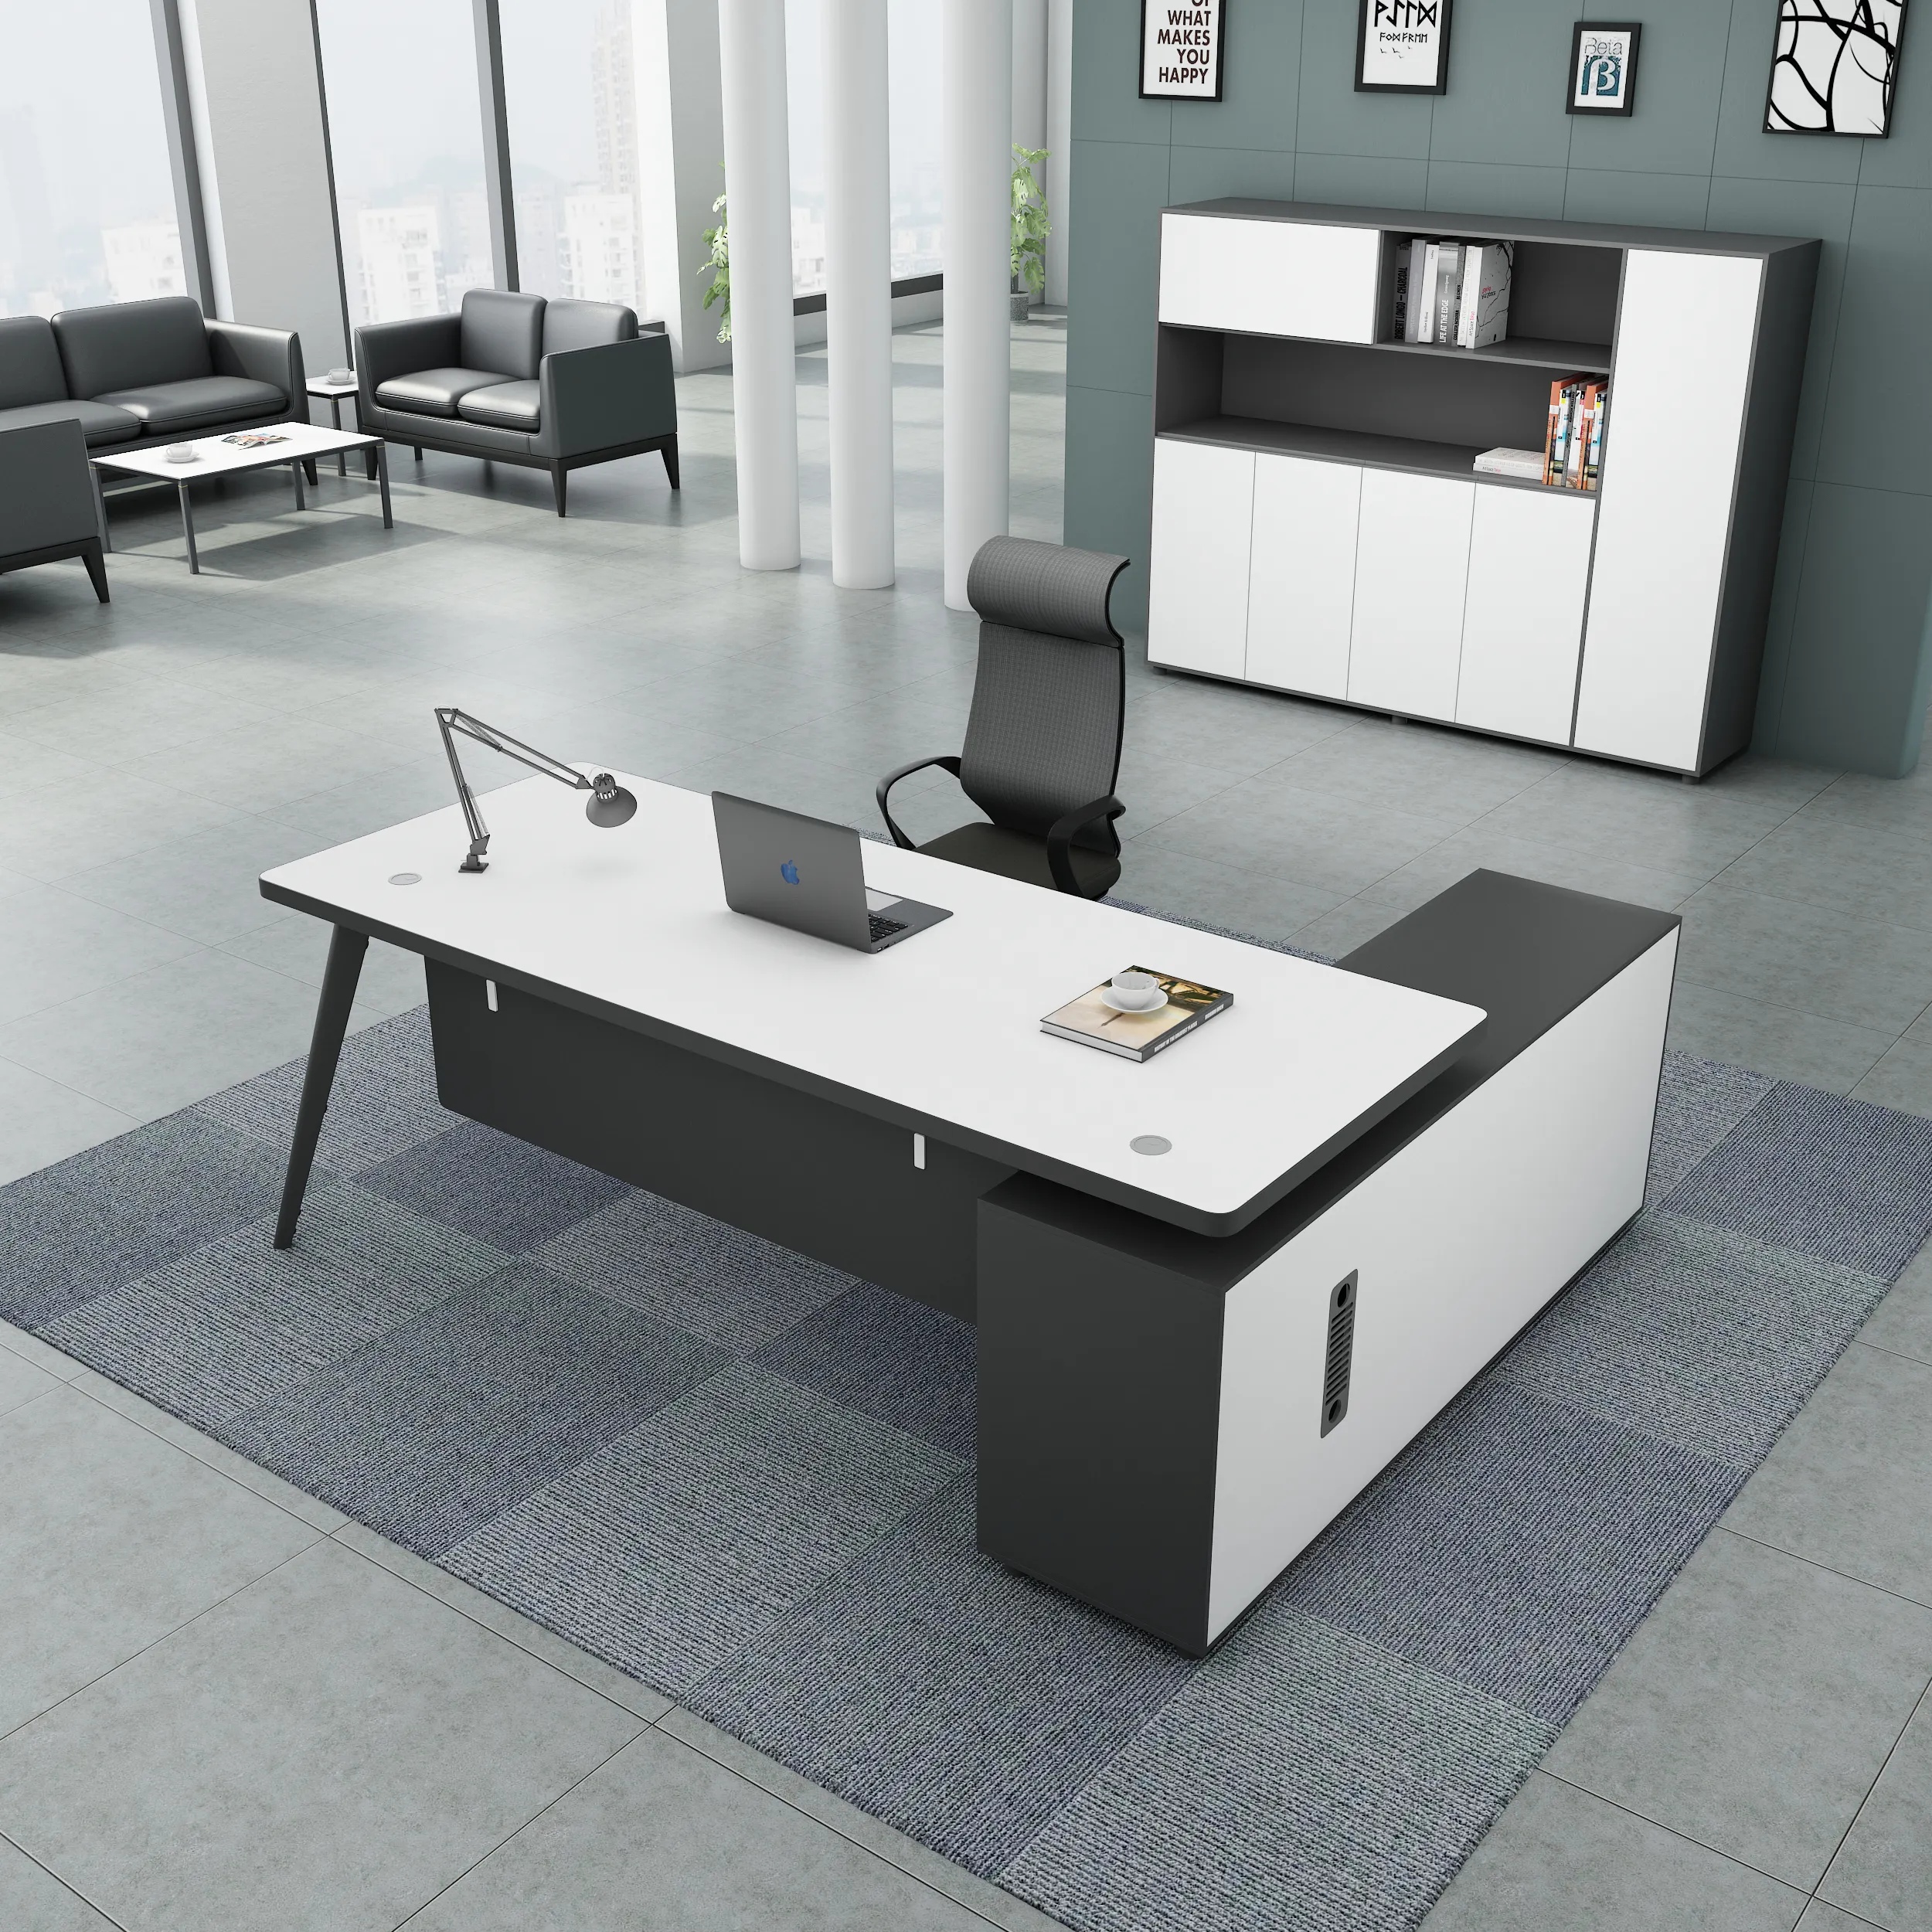 LBZ52 tavolo moderno ufficio mobili da ufficio a forma di L mdf commerciale manager bianco ufficio esecutivo scrivania in legno